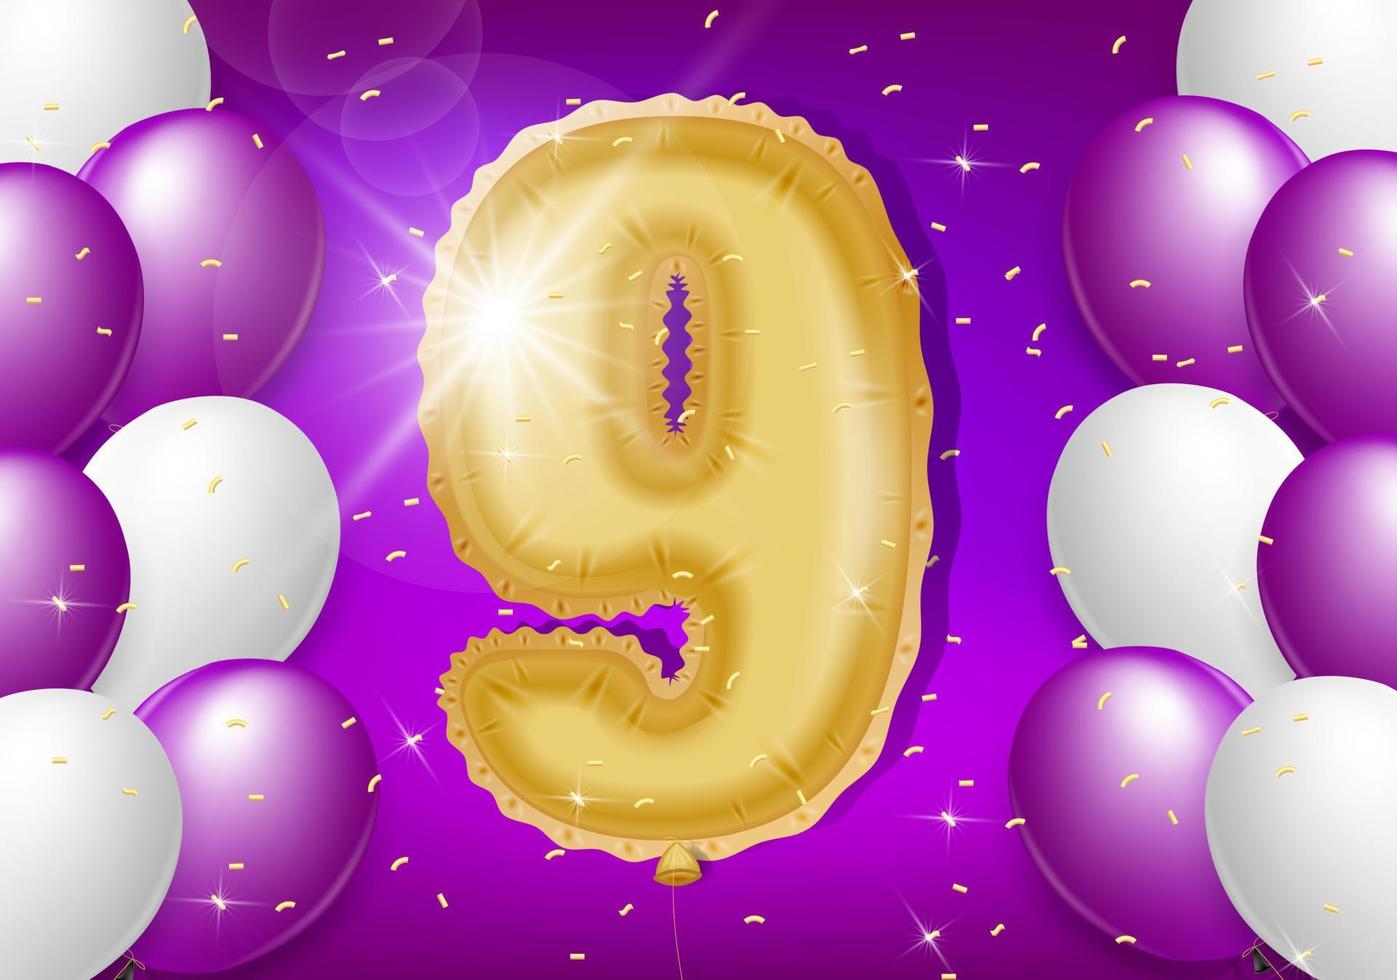 9:e år årsdag design med ballonger och skinande konfetti, design element för baner, vykort, affisch och inbjudan kort. realistisk 3d vektor